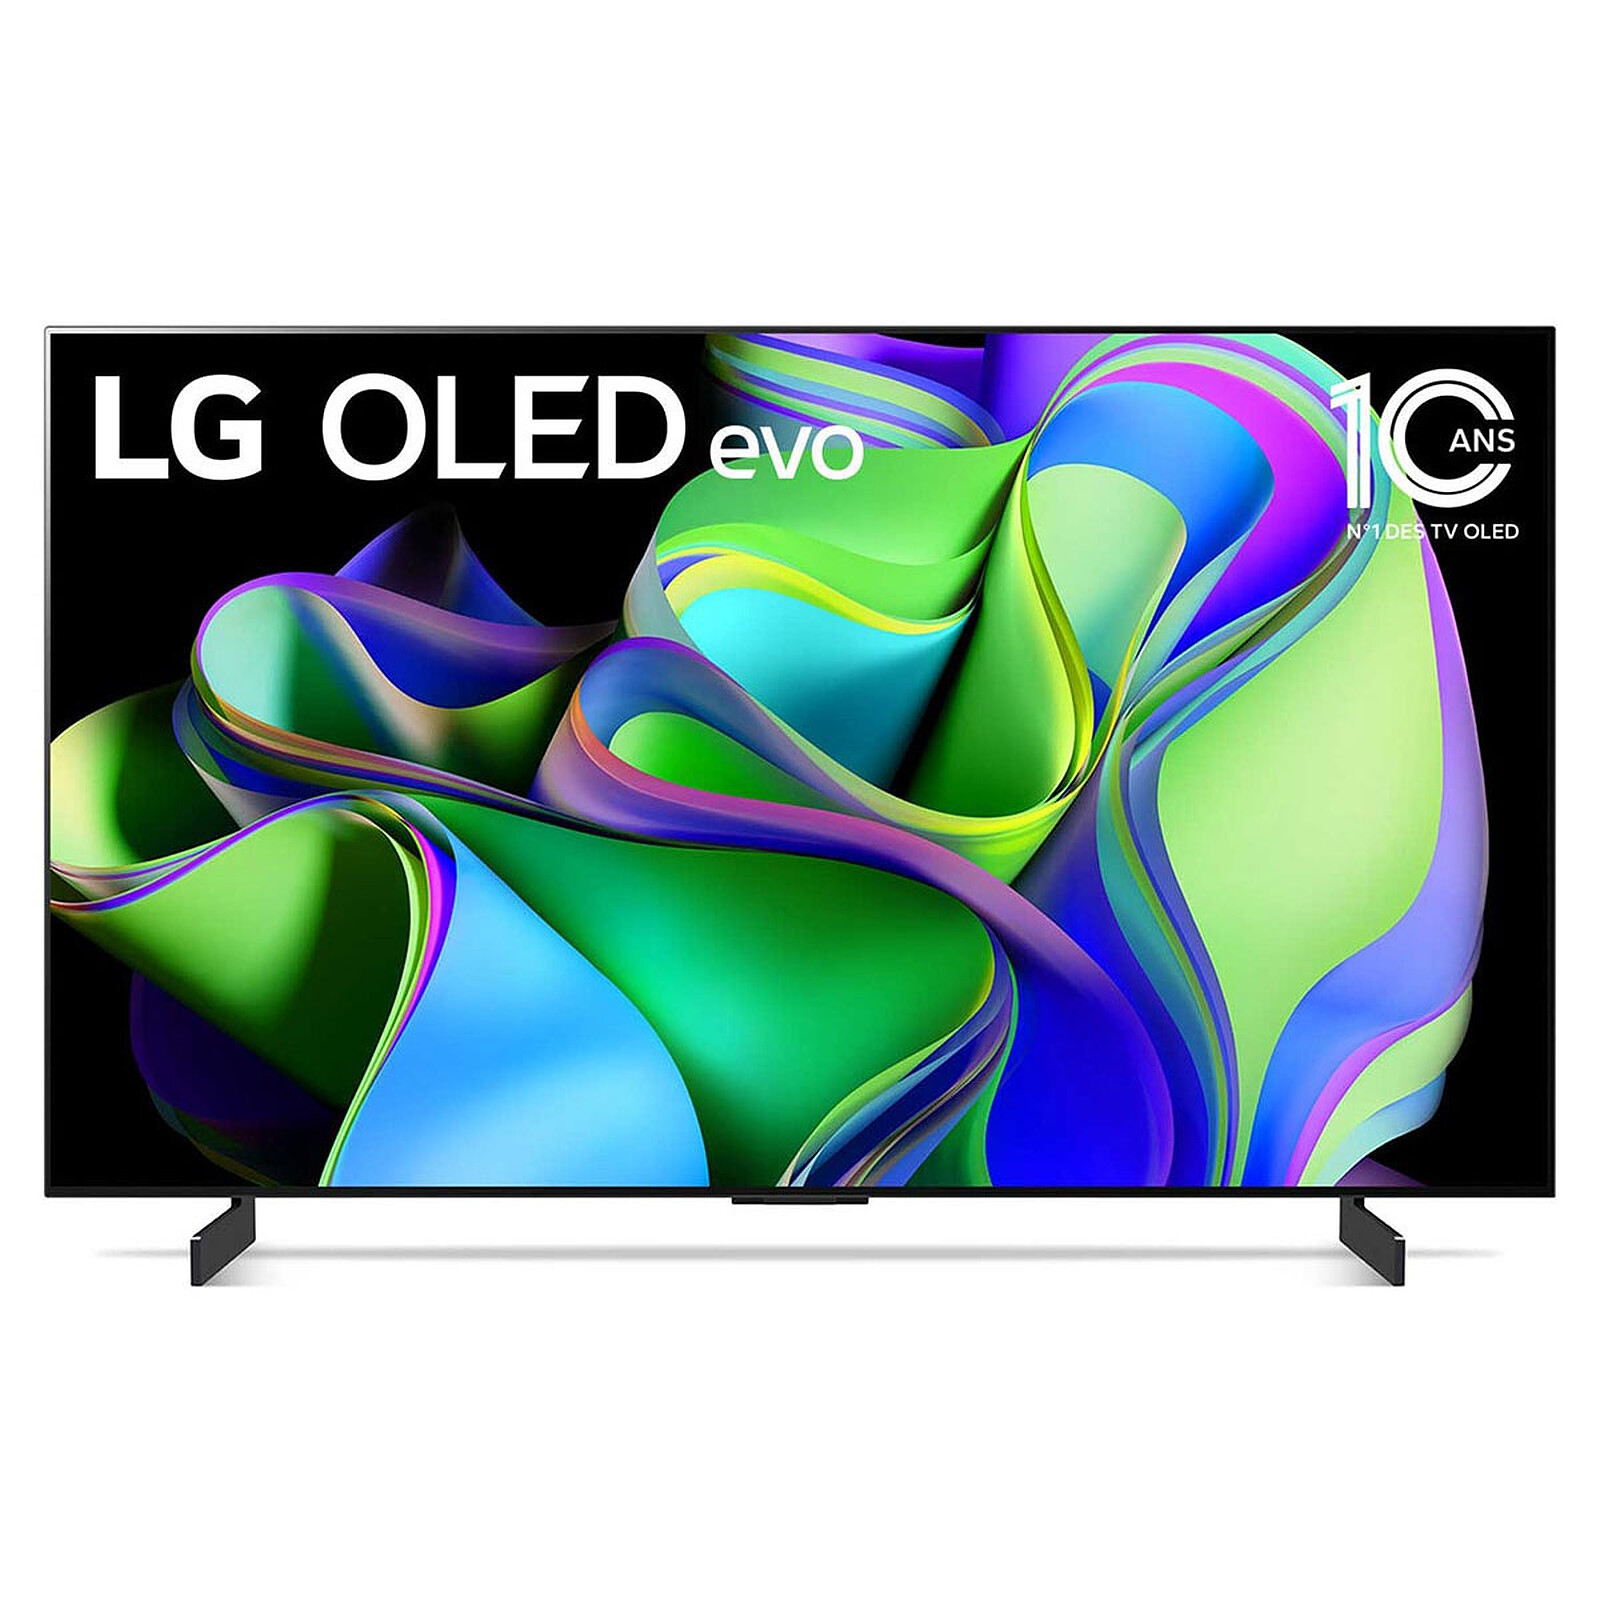 LG OLED C3 : les meilleures TV OLED home-cinéma et gaming 4K 120 Hz